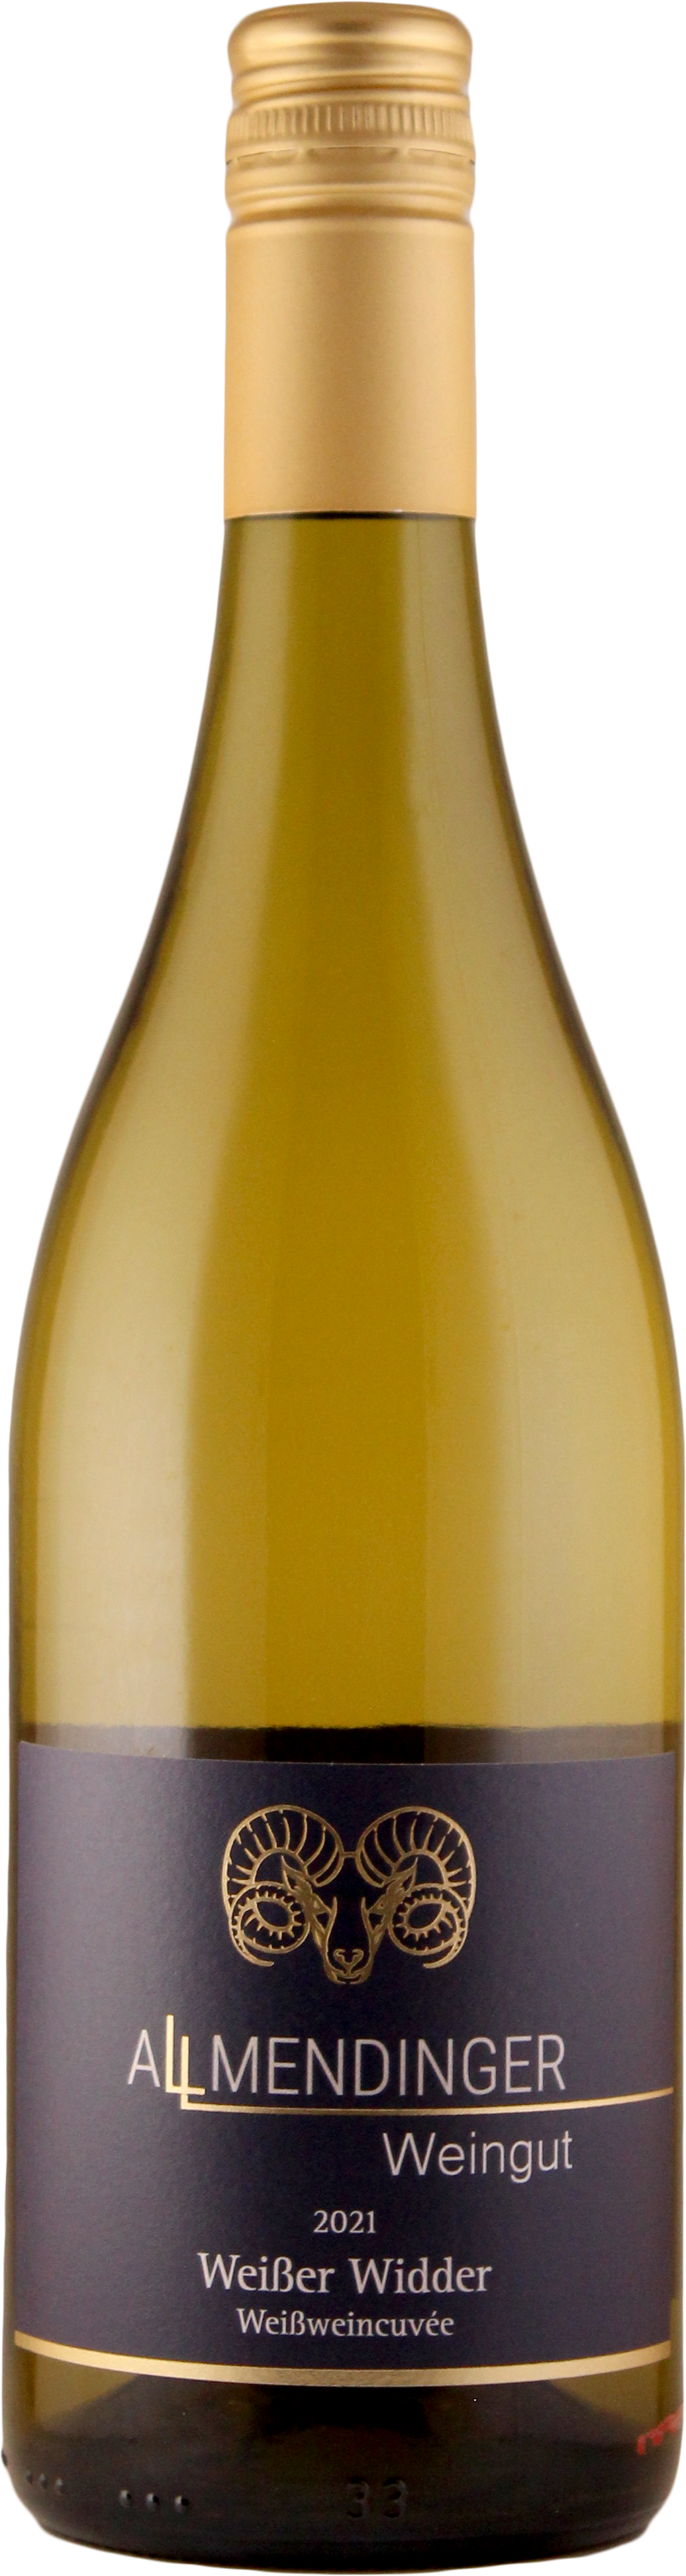 Weißer Widder Weißweincuvée lieblich 0,75 L - Weingut Allmendinger